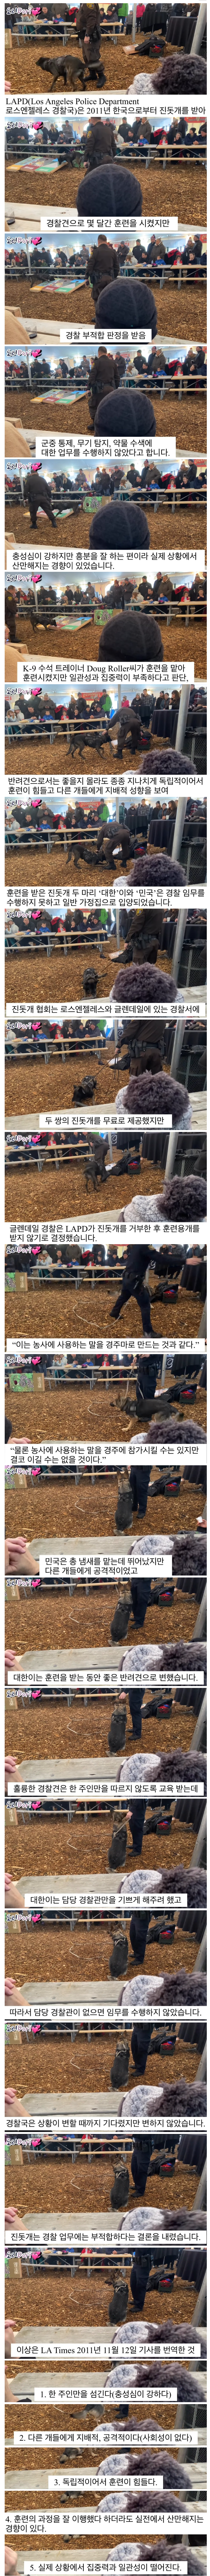 썸네일-진돗개가 경찰견으로 거부된 이유jpg-이미지